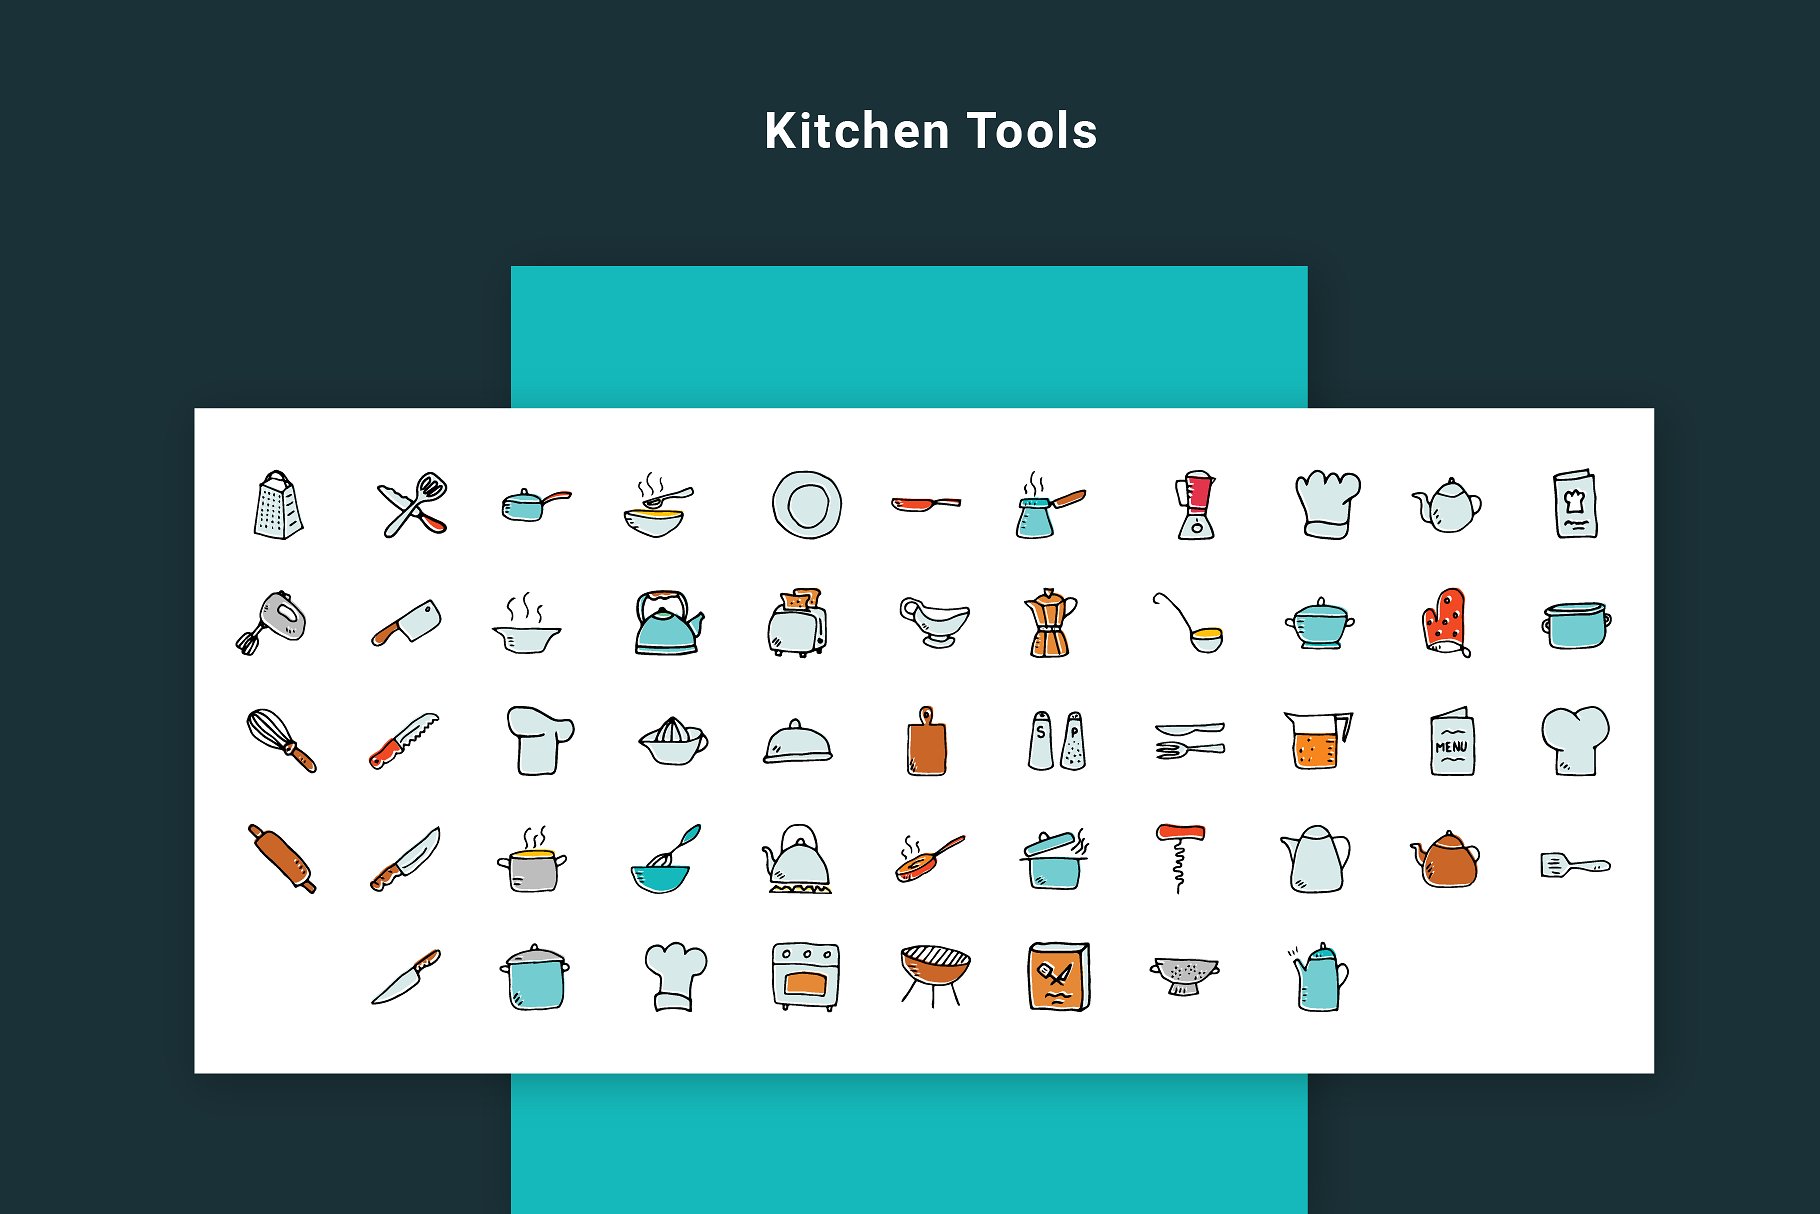 手绘卡通食品线条图标集 Foodie – Food Hand Drawn Icons插图(7)